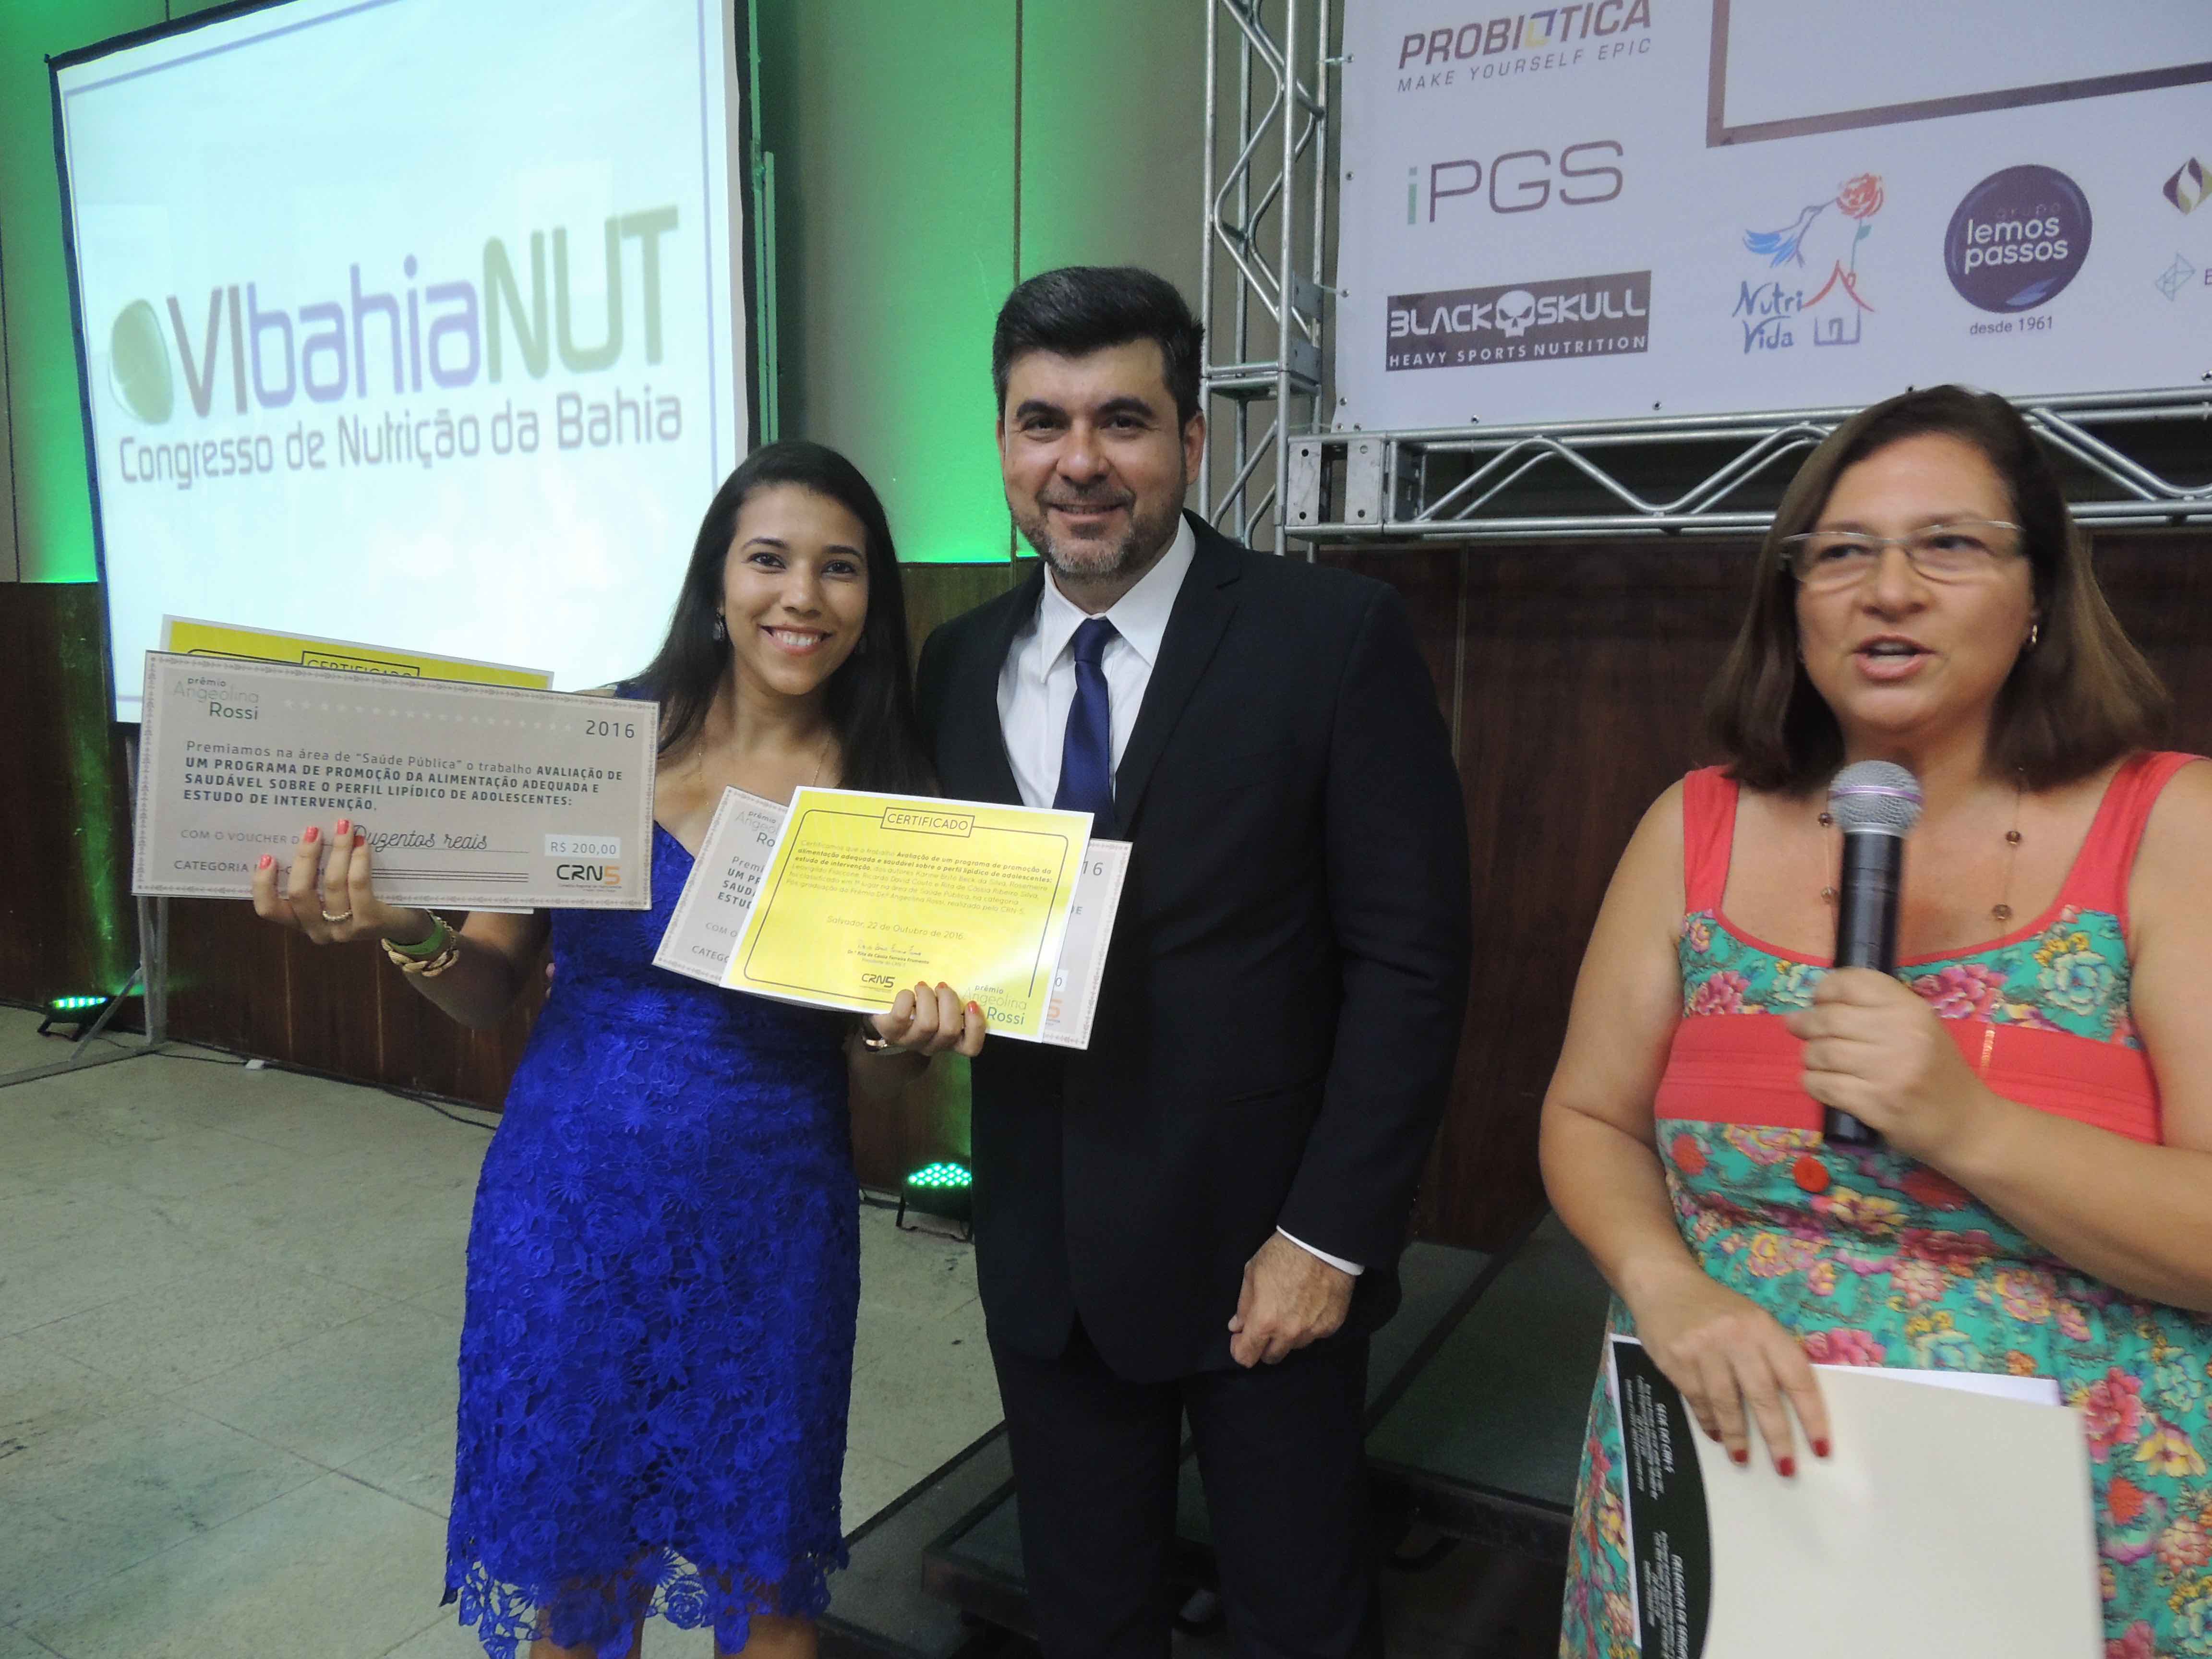 REVISTA: Prêmio Angeolina Rossi by Conselho Regional de